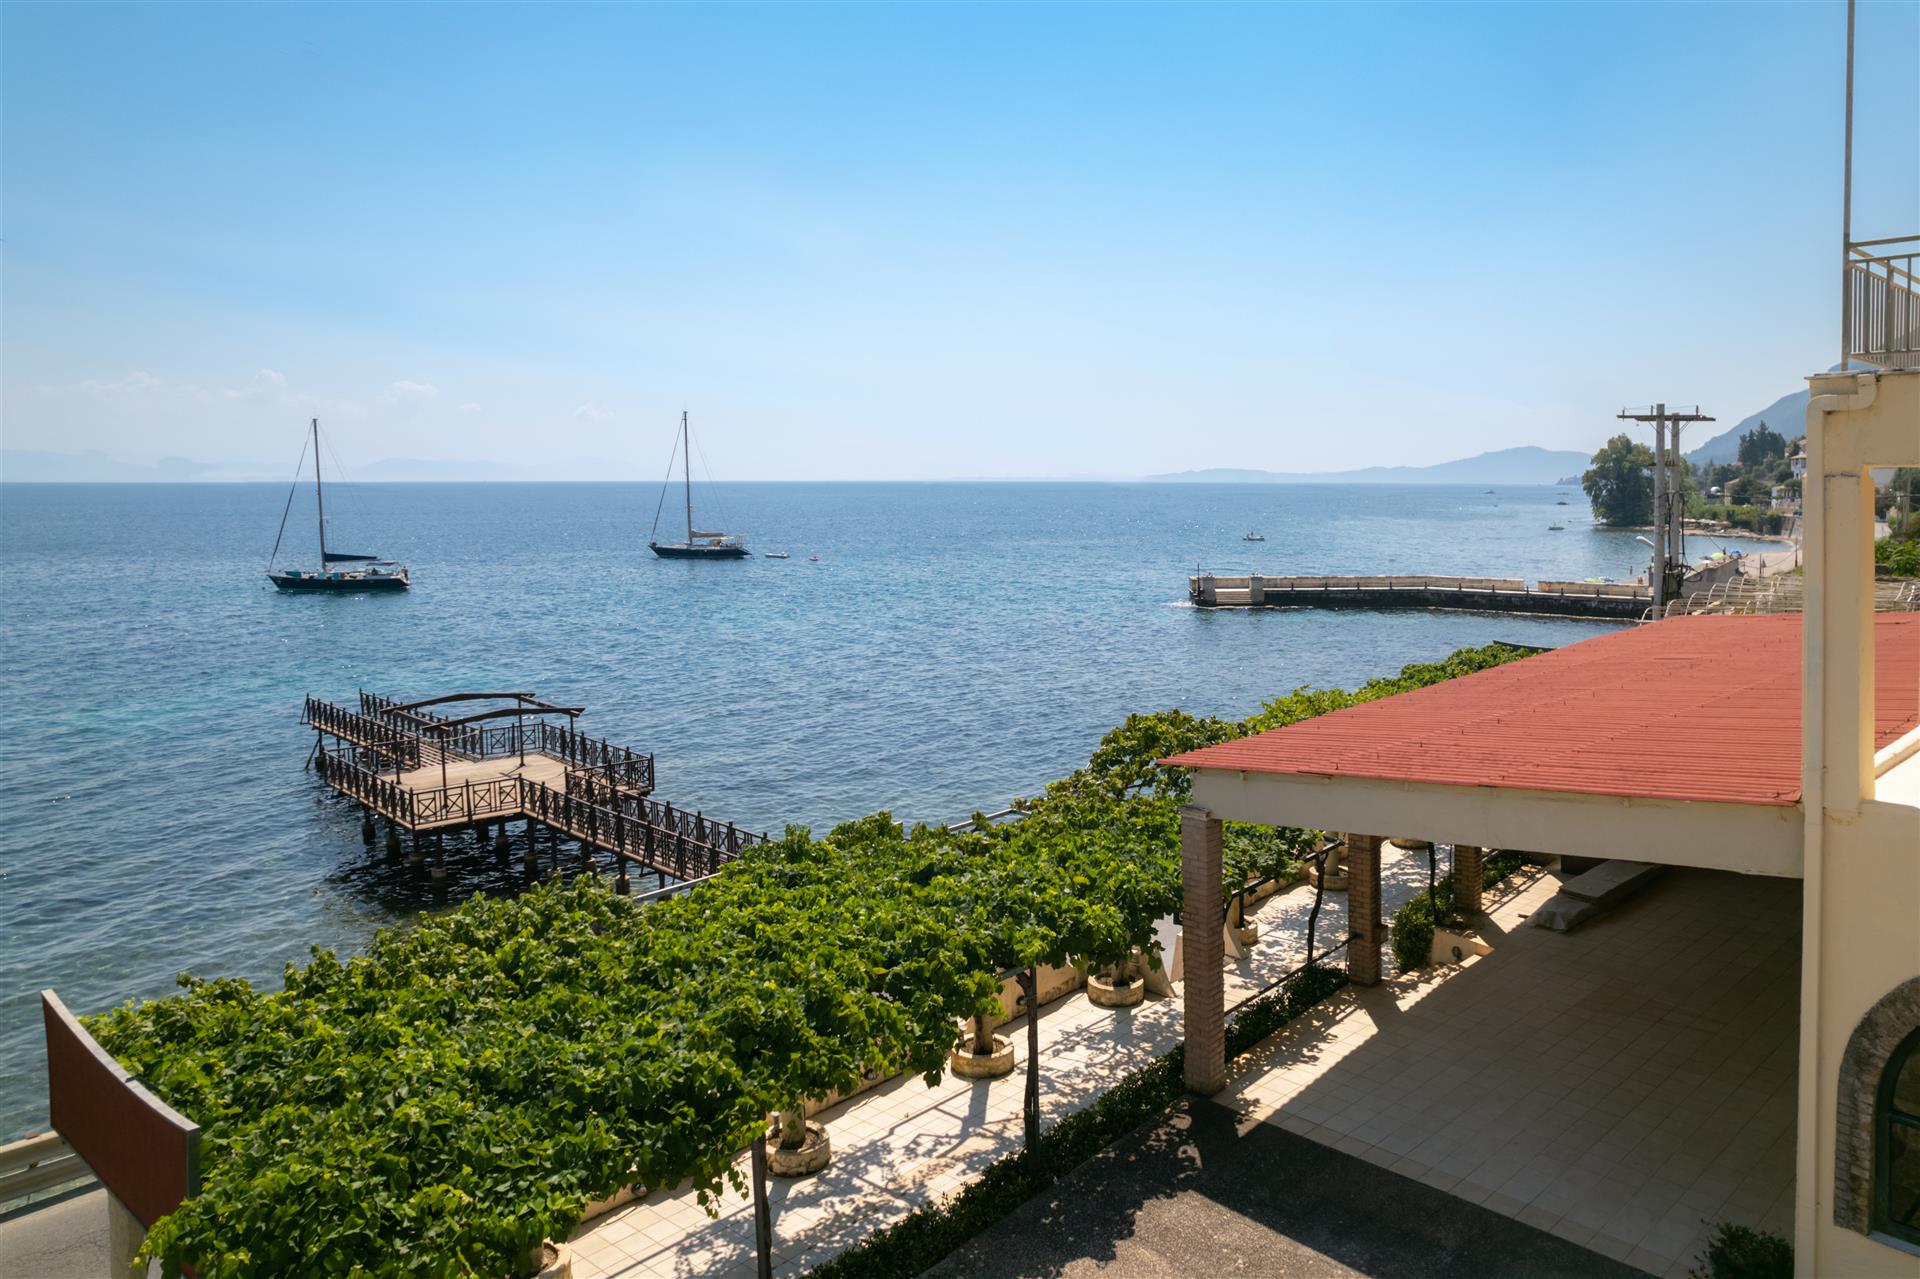 Obchodný a rezidenčný komplex na východnom pobreží Korfu